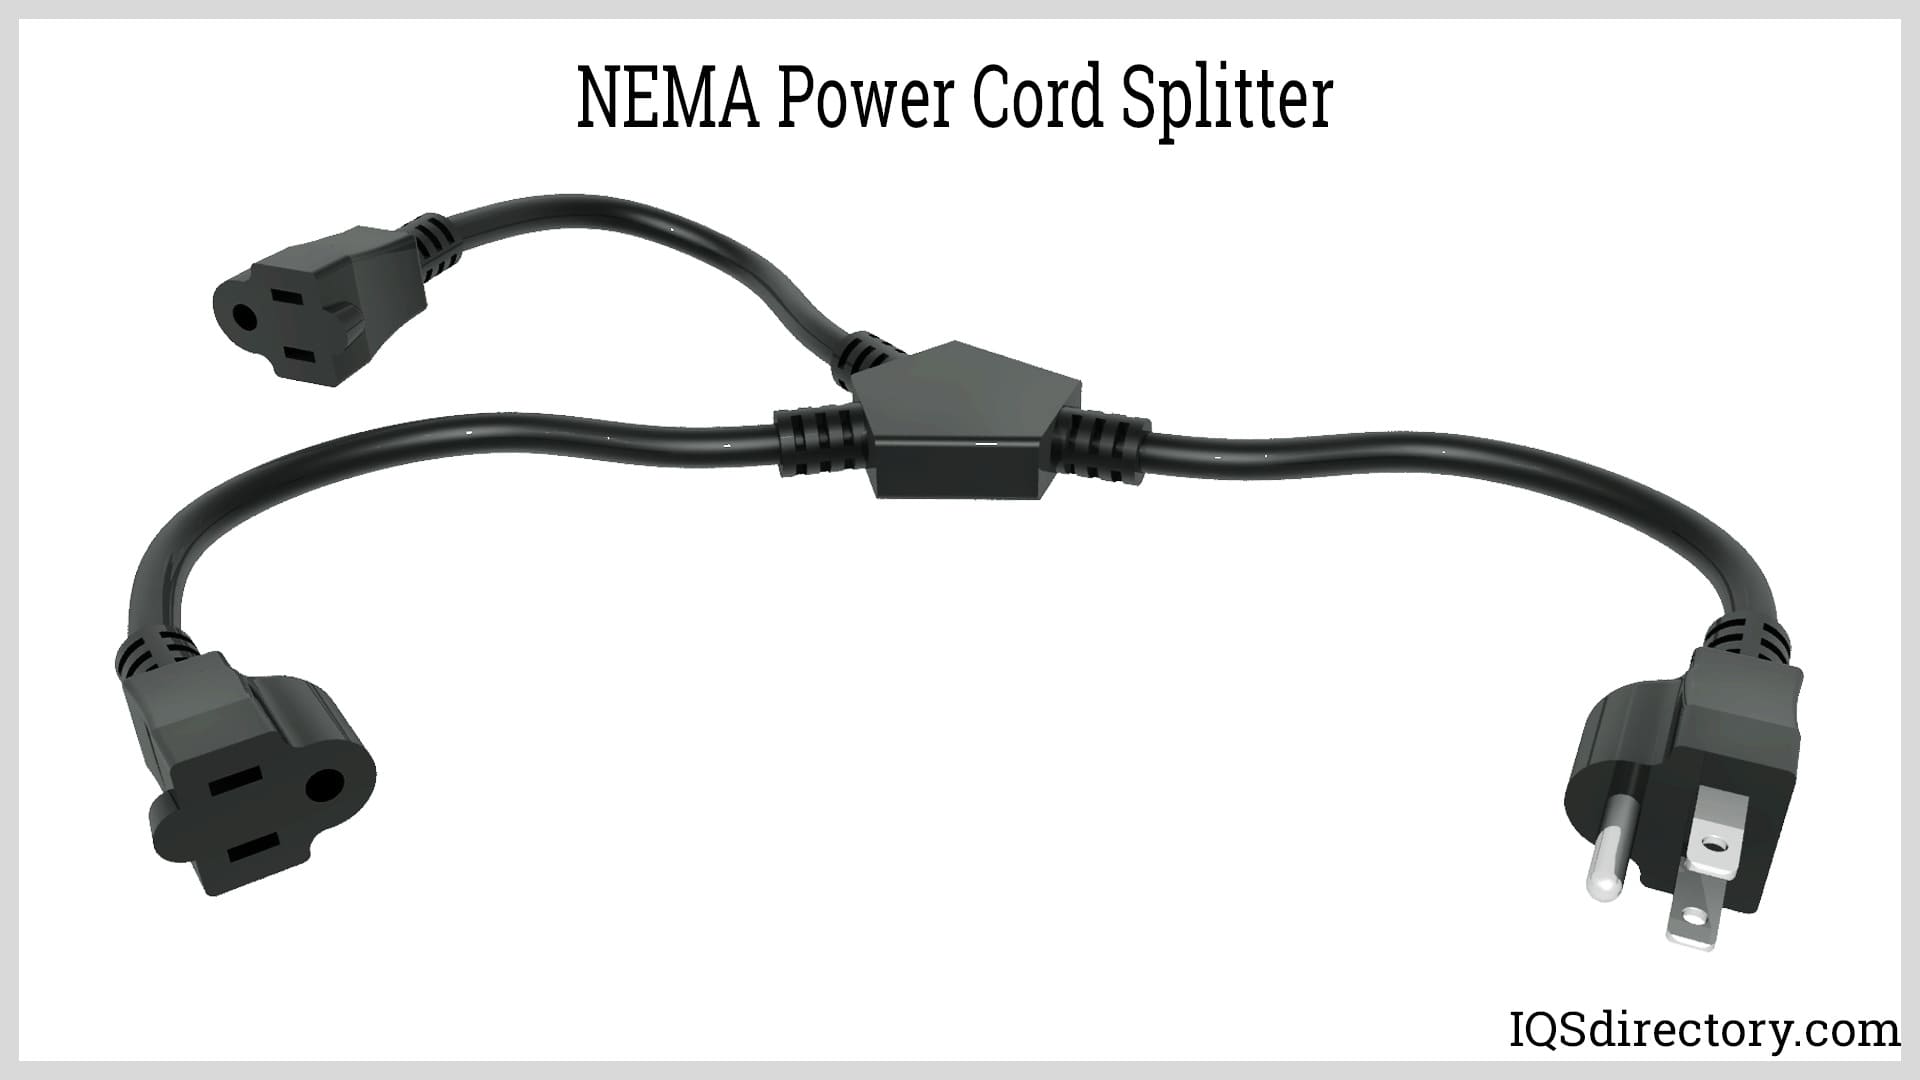 NEMA Power Cord Splitter